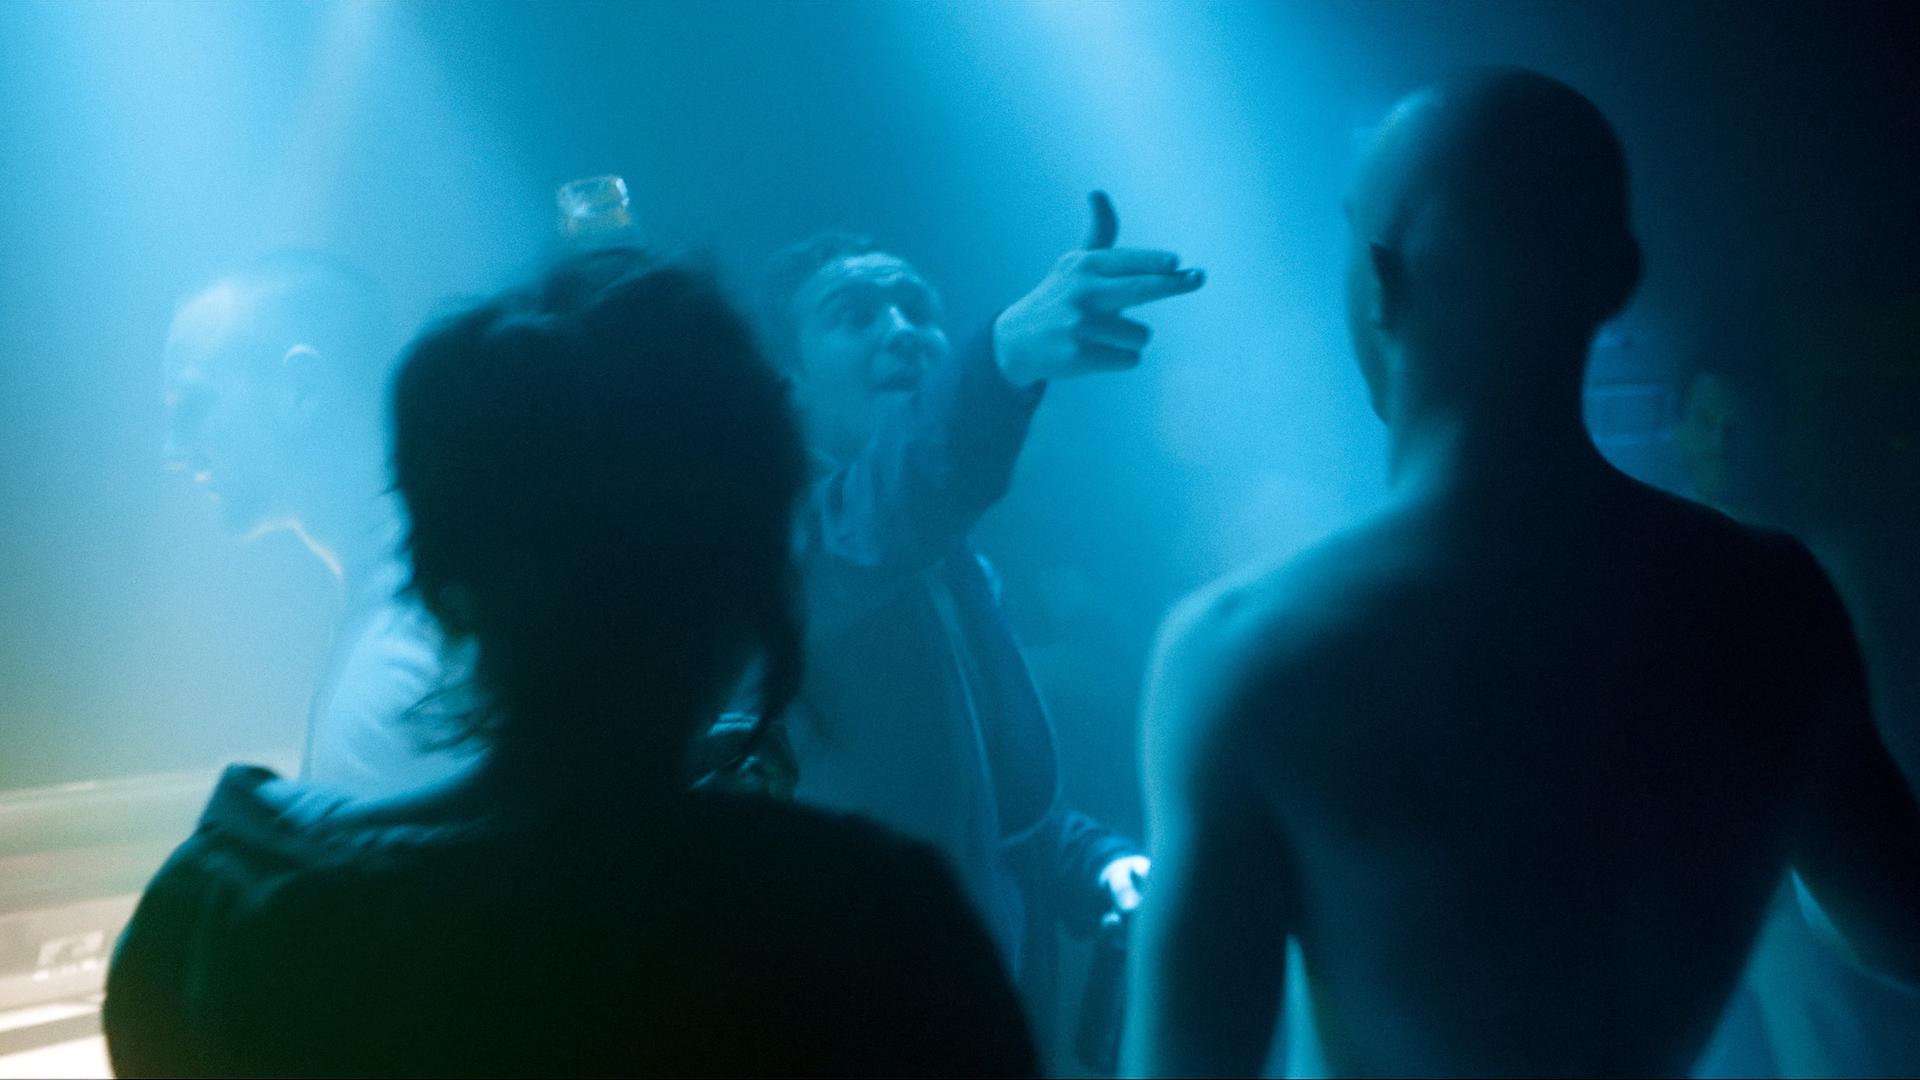 Laia Costa, Frederick Lau und Franz Rogowski in Sebastian Schippers "Victoria". Frederick Lau richtet eine imaginäre Pistole auf die anderen, alle stehen in blauem Club-Dämmerlicht. 